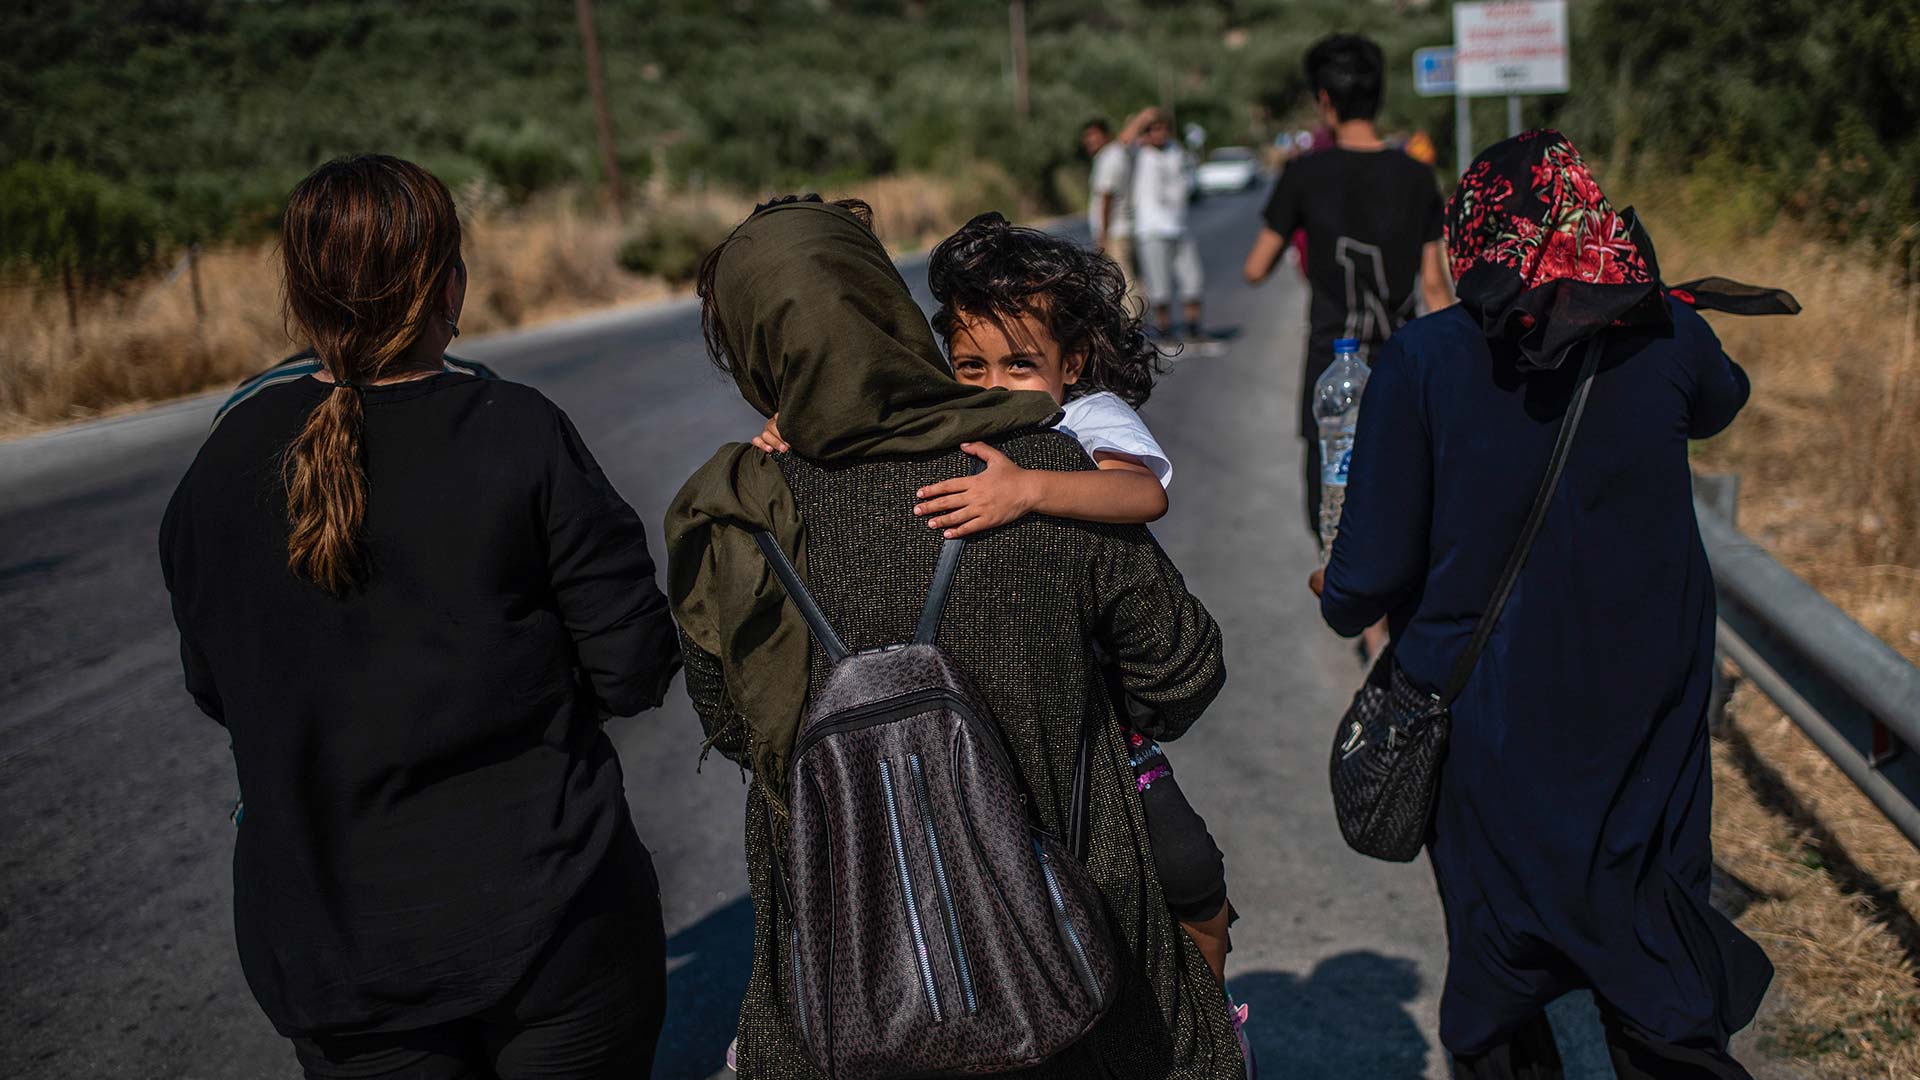 Grecia establece "estrictas" medidas para abordar la "gran ola" de migrantes